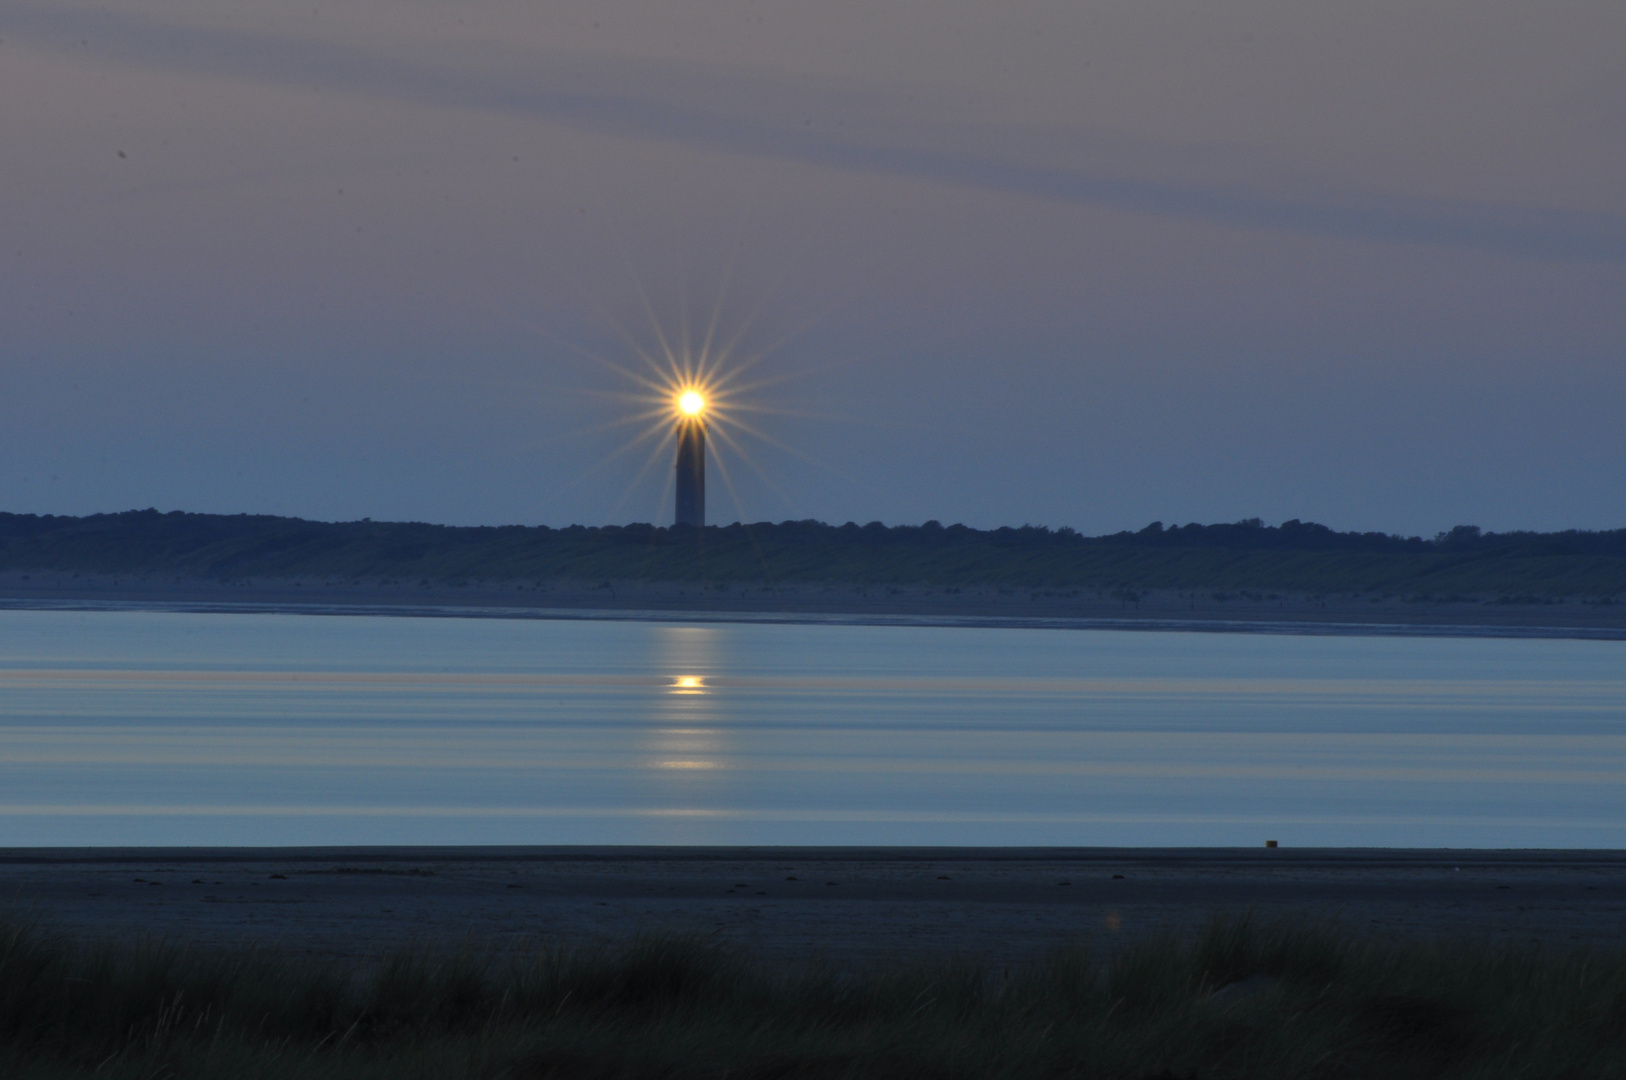 Leuchtturm an der Küste